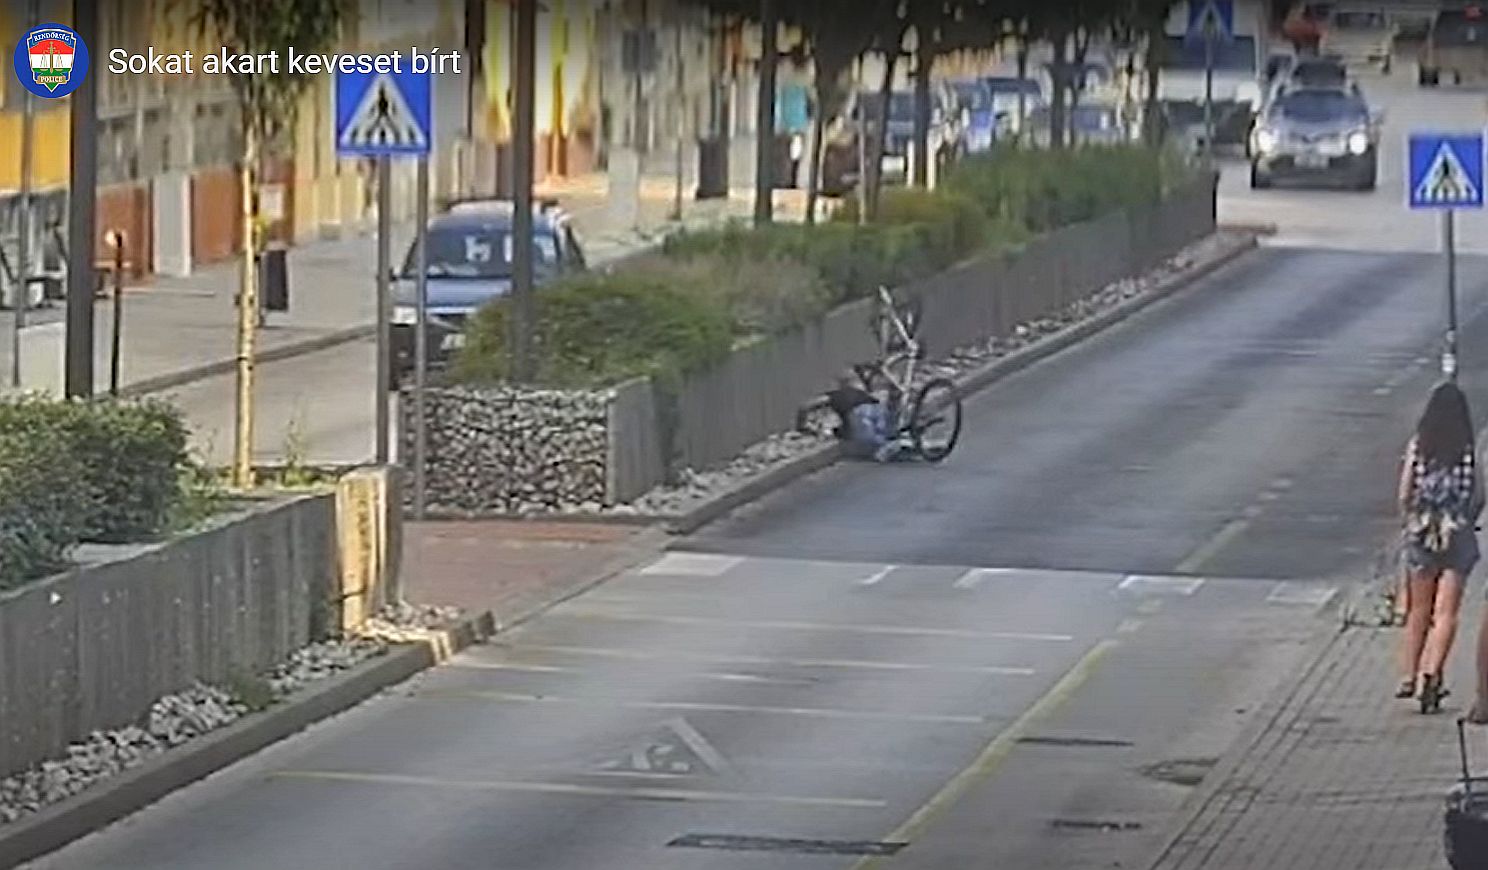 Visszapattant a gabionfalról a biciklitolvaj - a térfigyelő kamerák segítségével elfogták